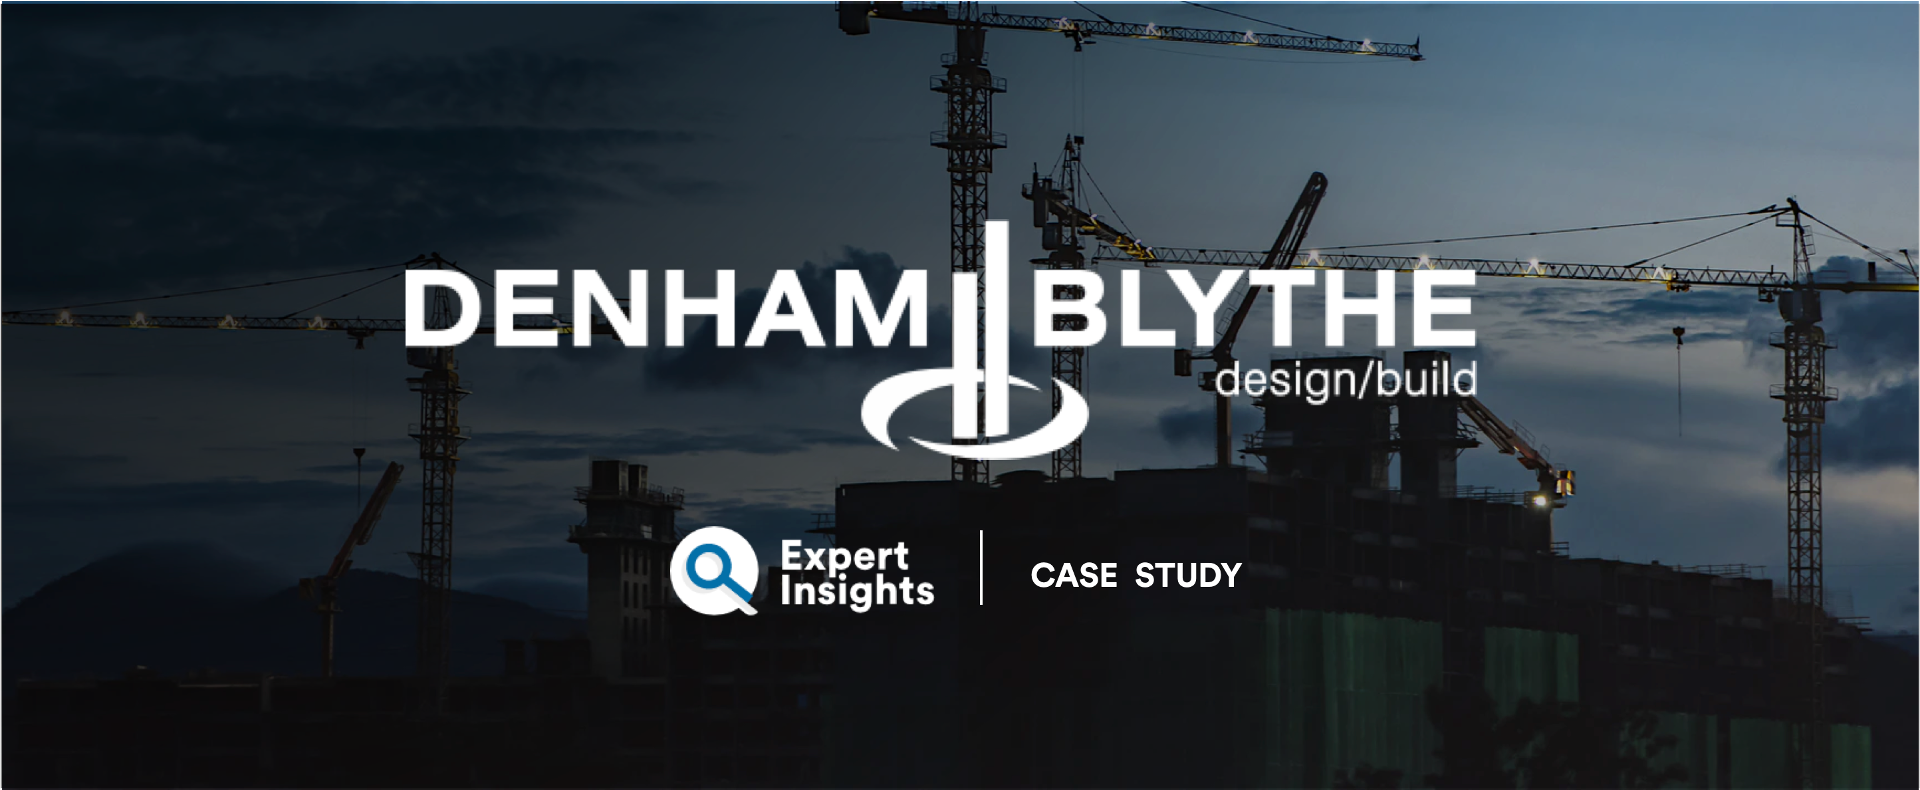 Denham Blythe Case Study